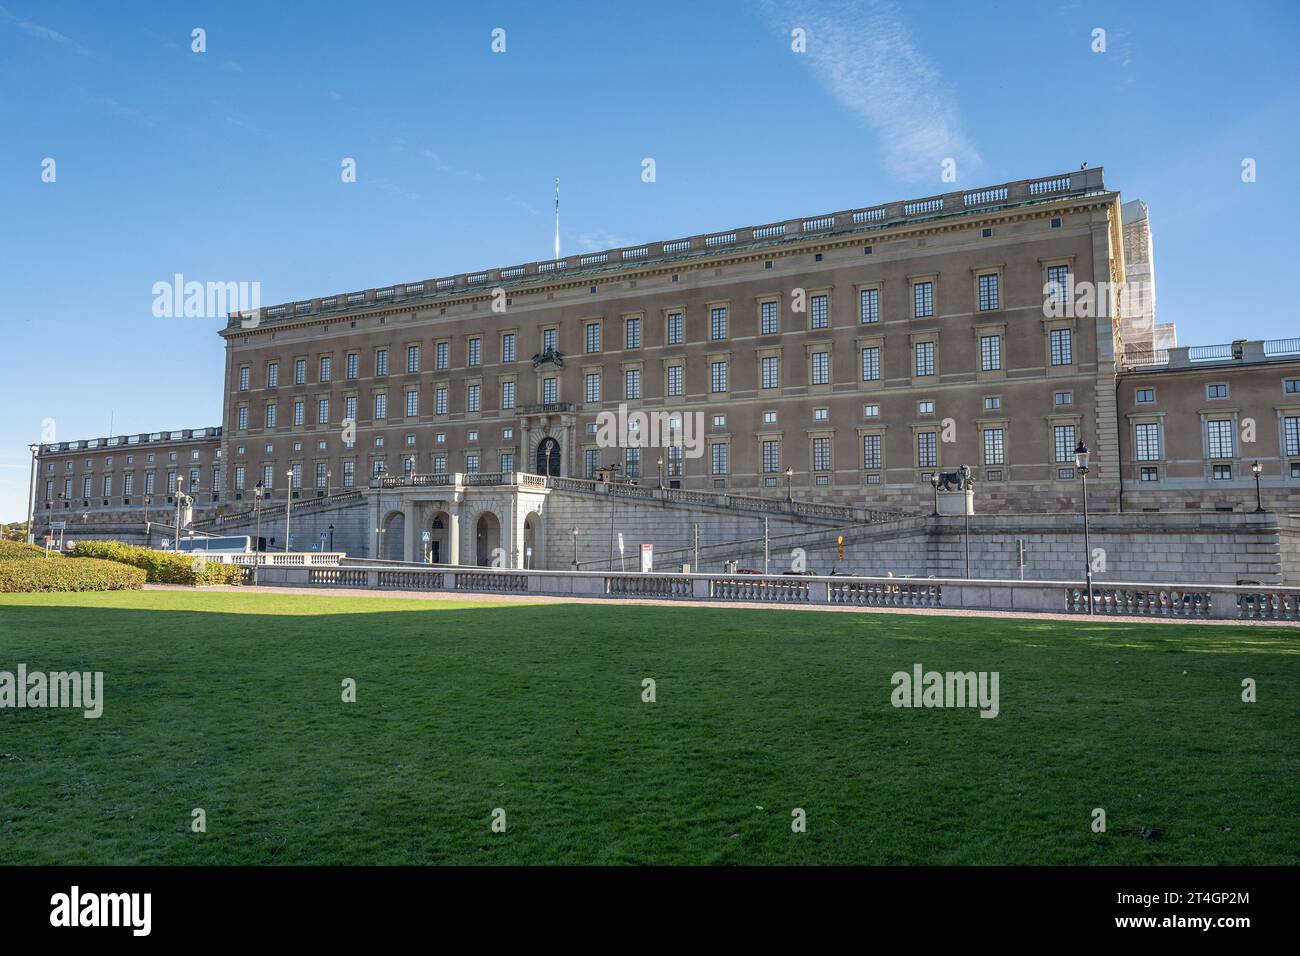 Palais royal de Stockholm Kungliga slott résidence officielle du monarque suédois. Banque D'Images